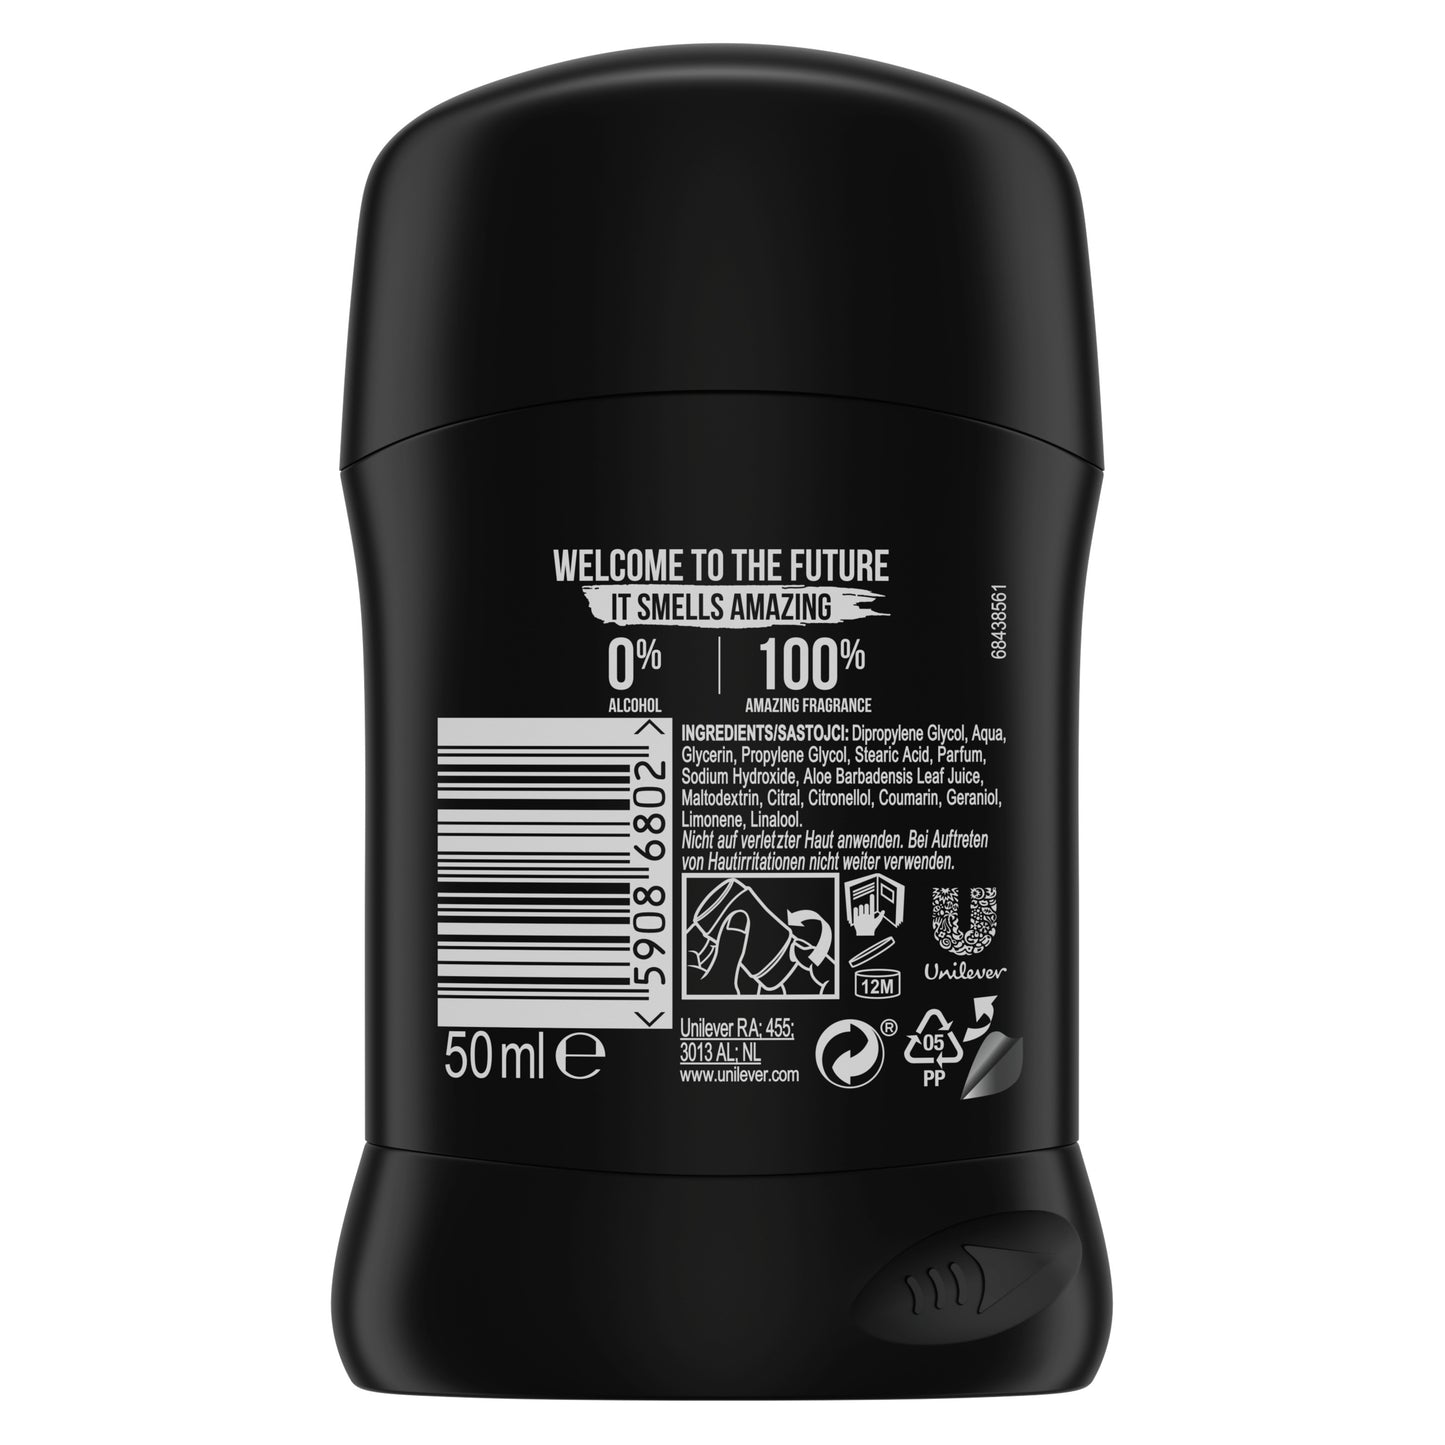 Axe - Deodorant Man - Stick -  Ice Chill - 6 x 50 ml - Voordeelverpakking